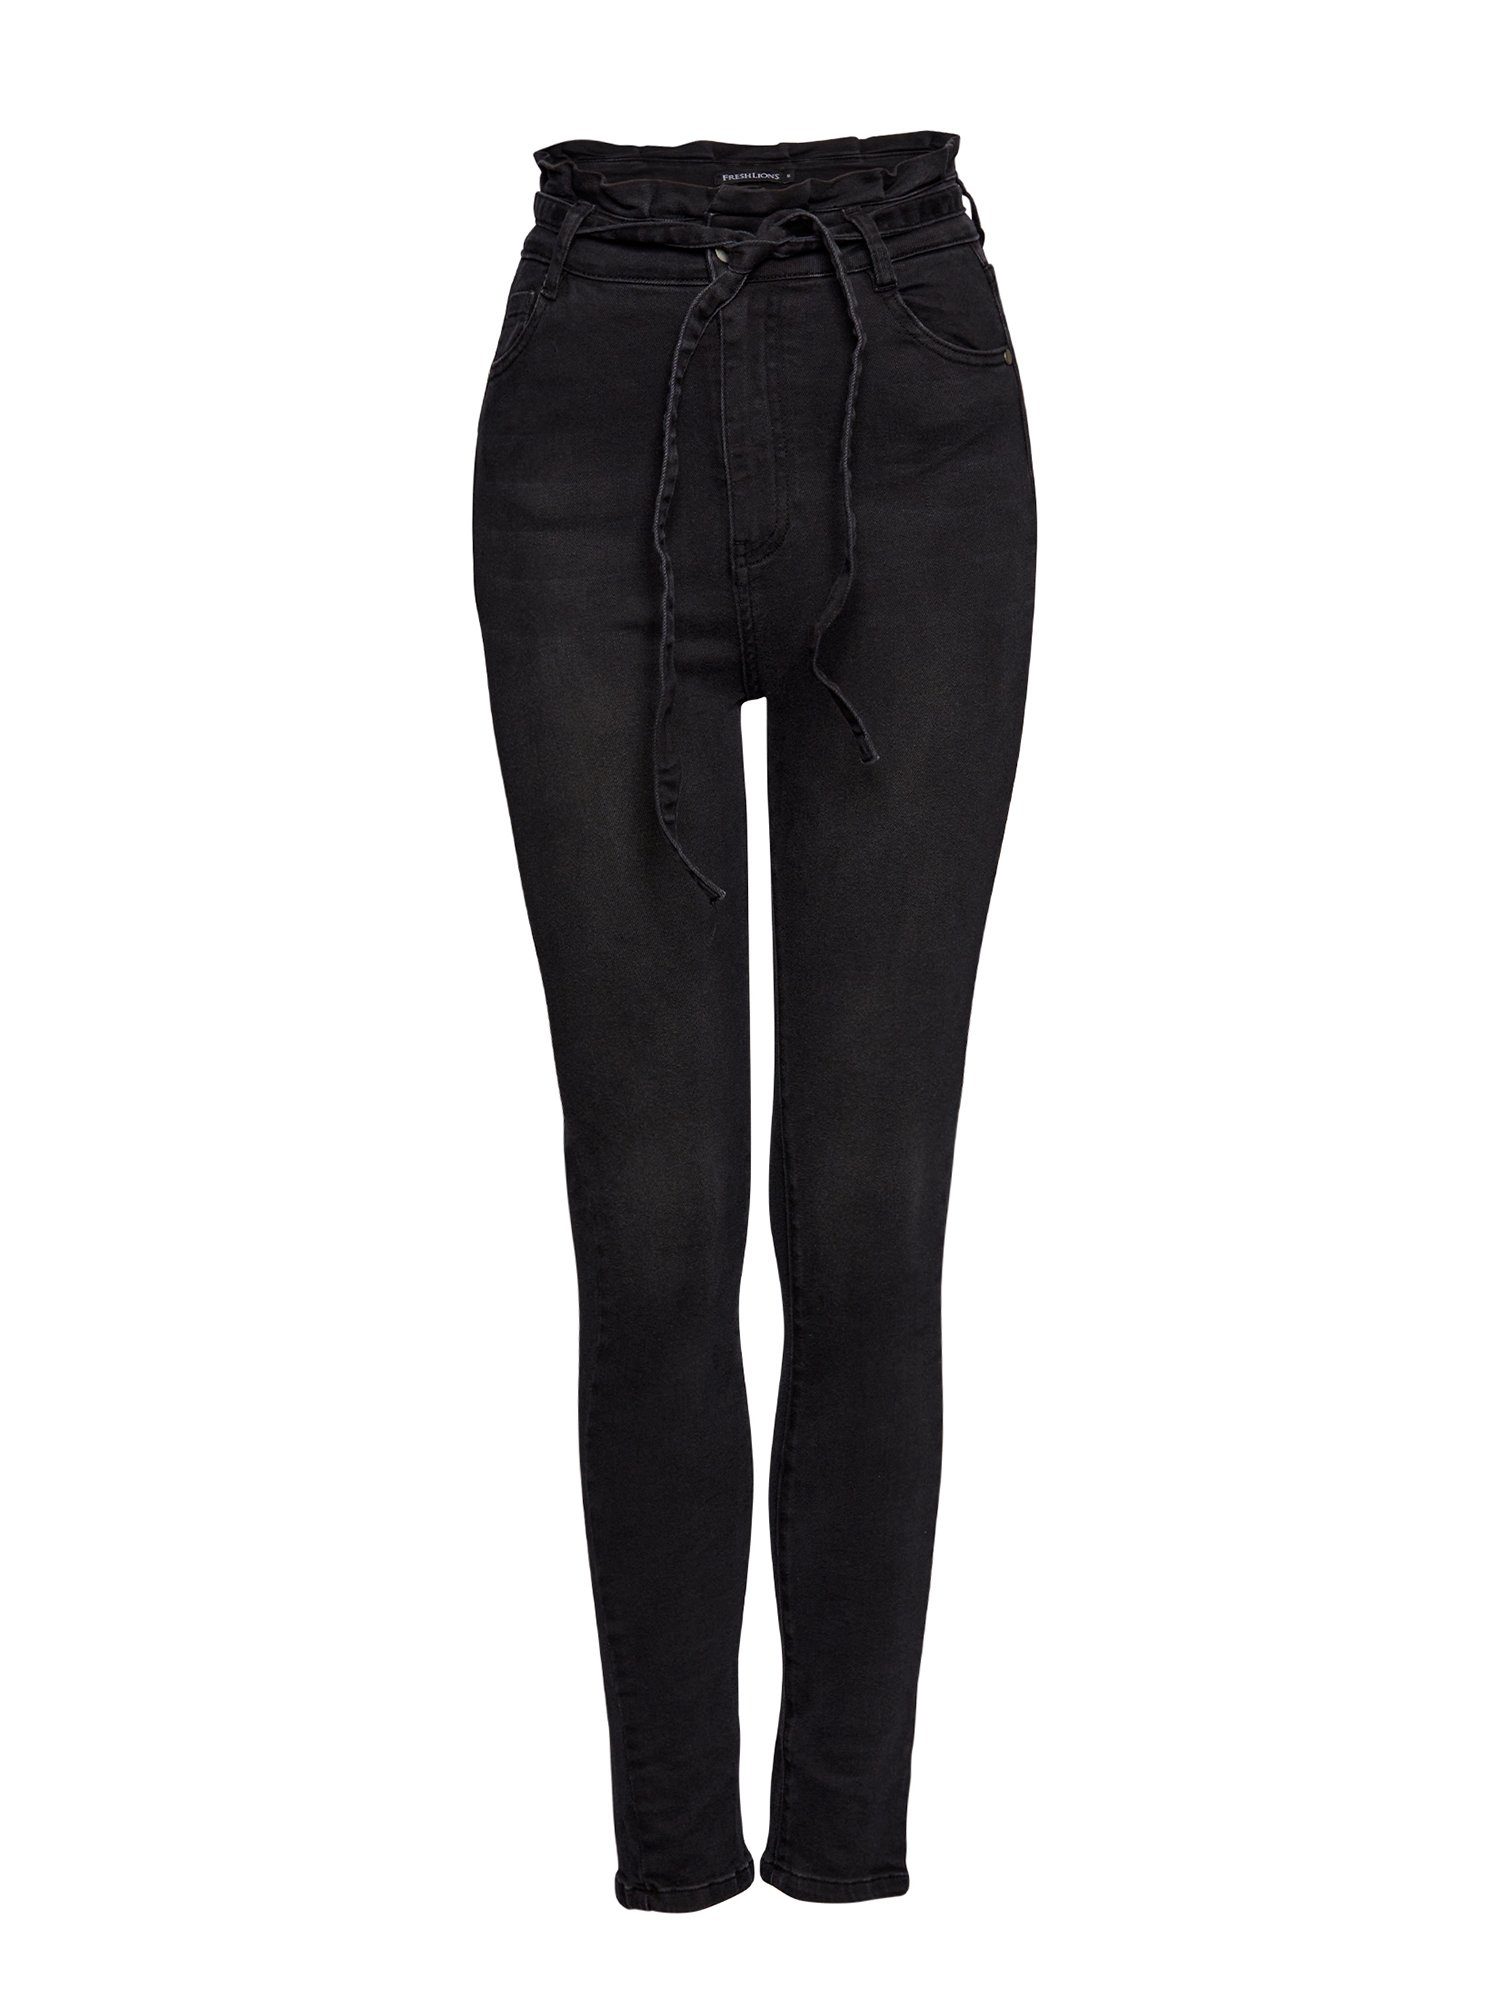 mit schwarz Bindegurt Jeans High-waist-Jeans Freshlions